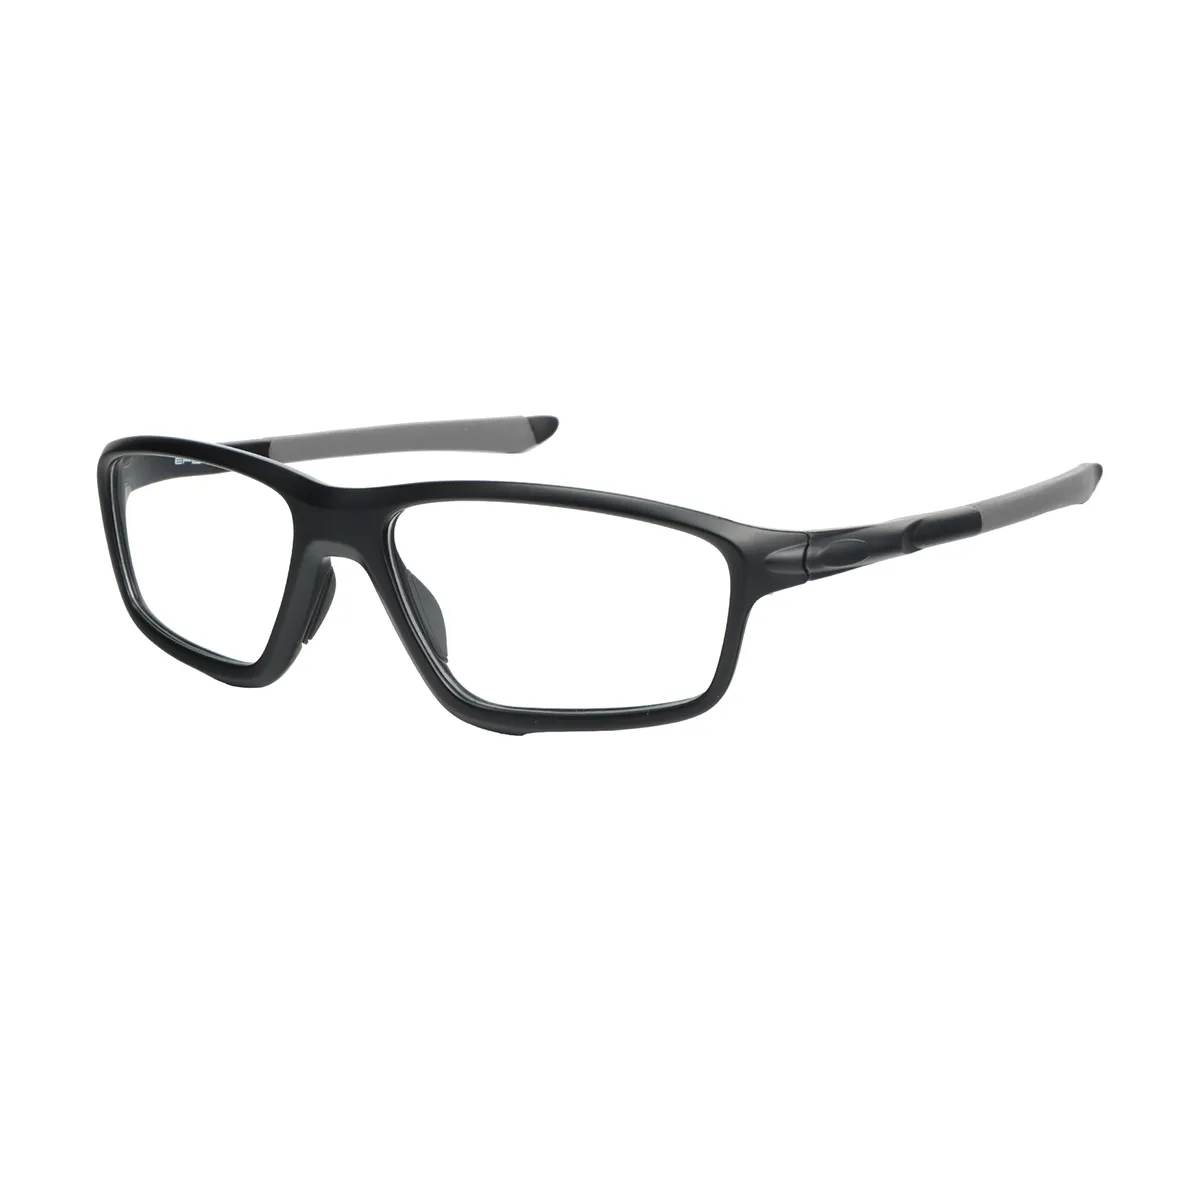 George - Rectangle Black-Gray Glasses for Men & Women - EFE